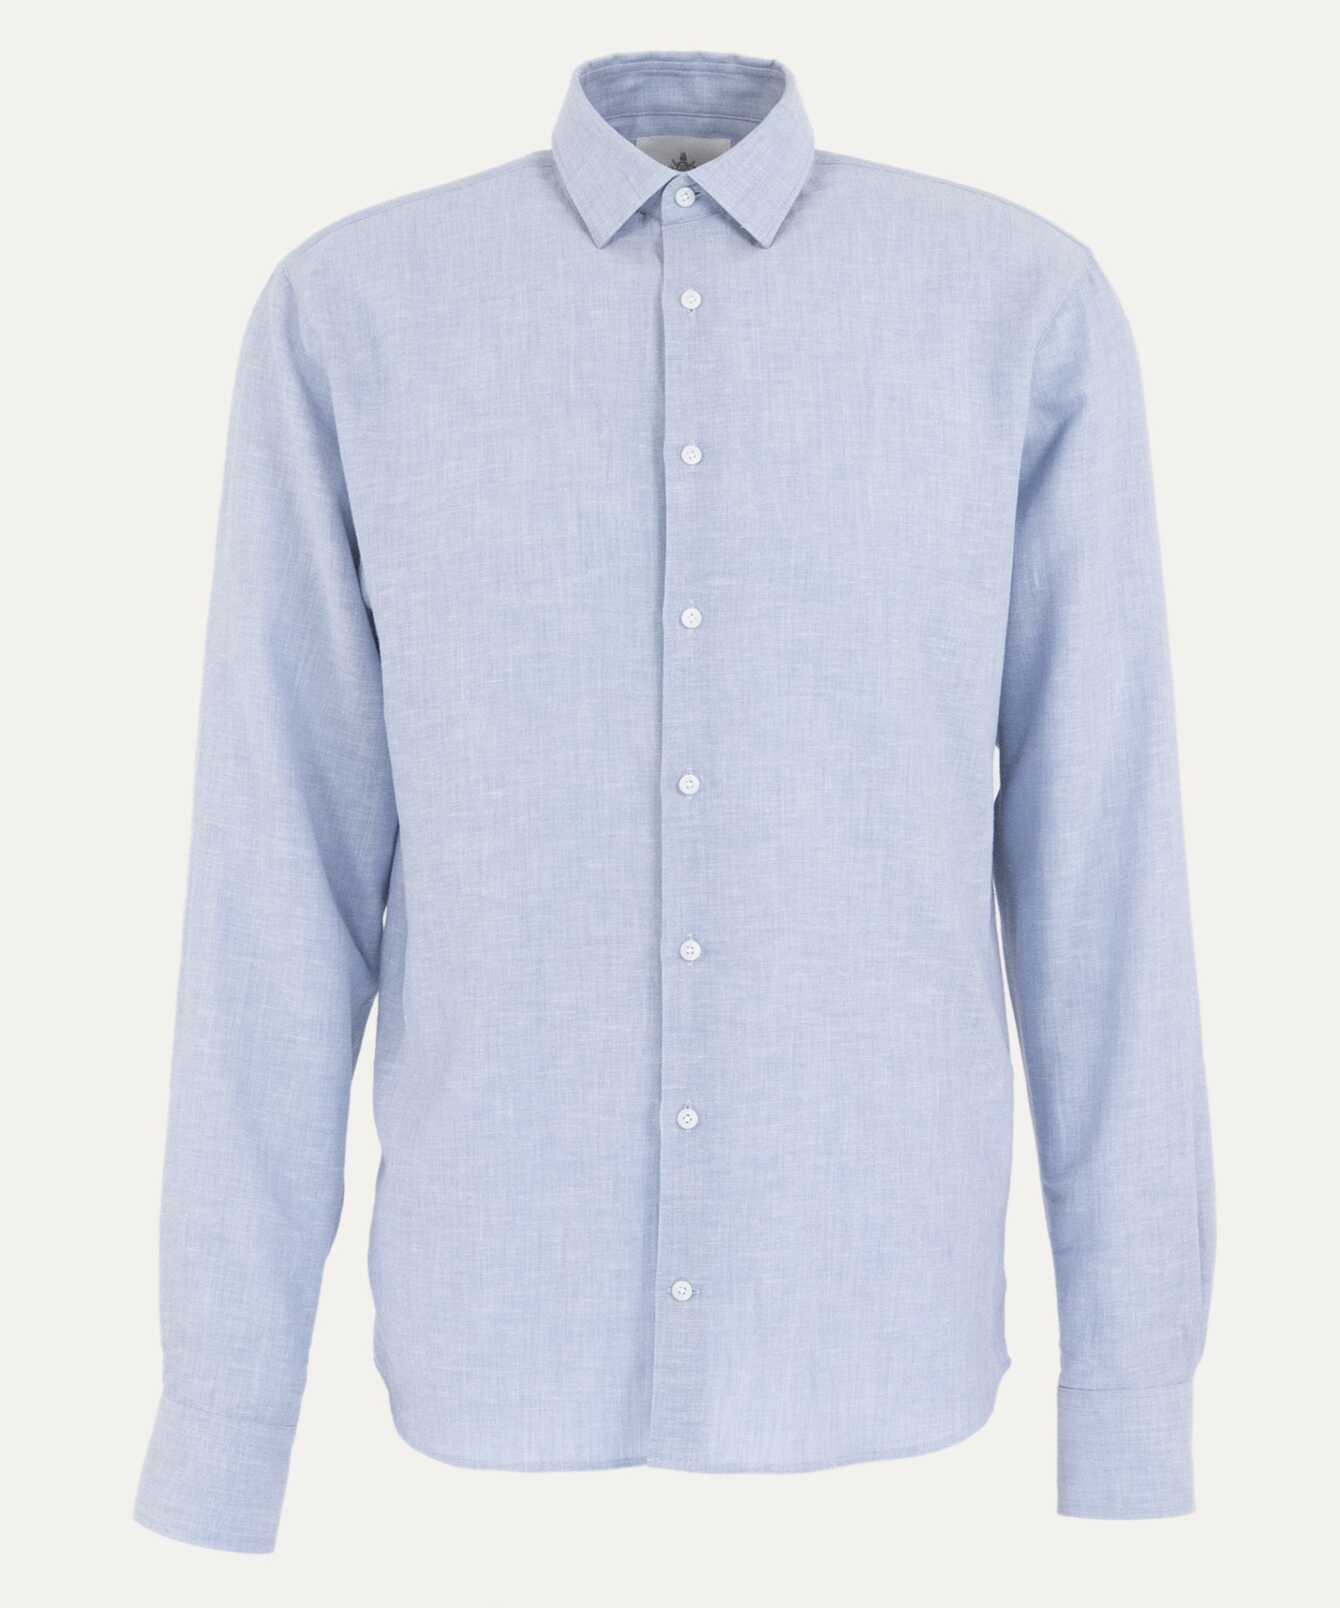 Shirt Webster  Light Blue Cotton Linen Shirt Extra Long Sleeve The Shirt Factory